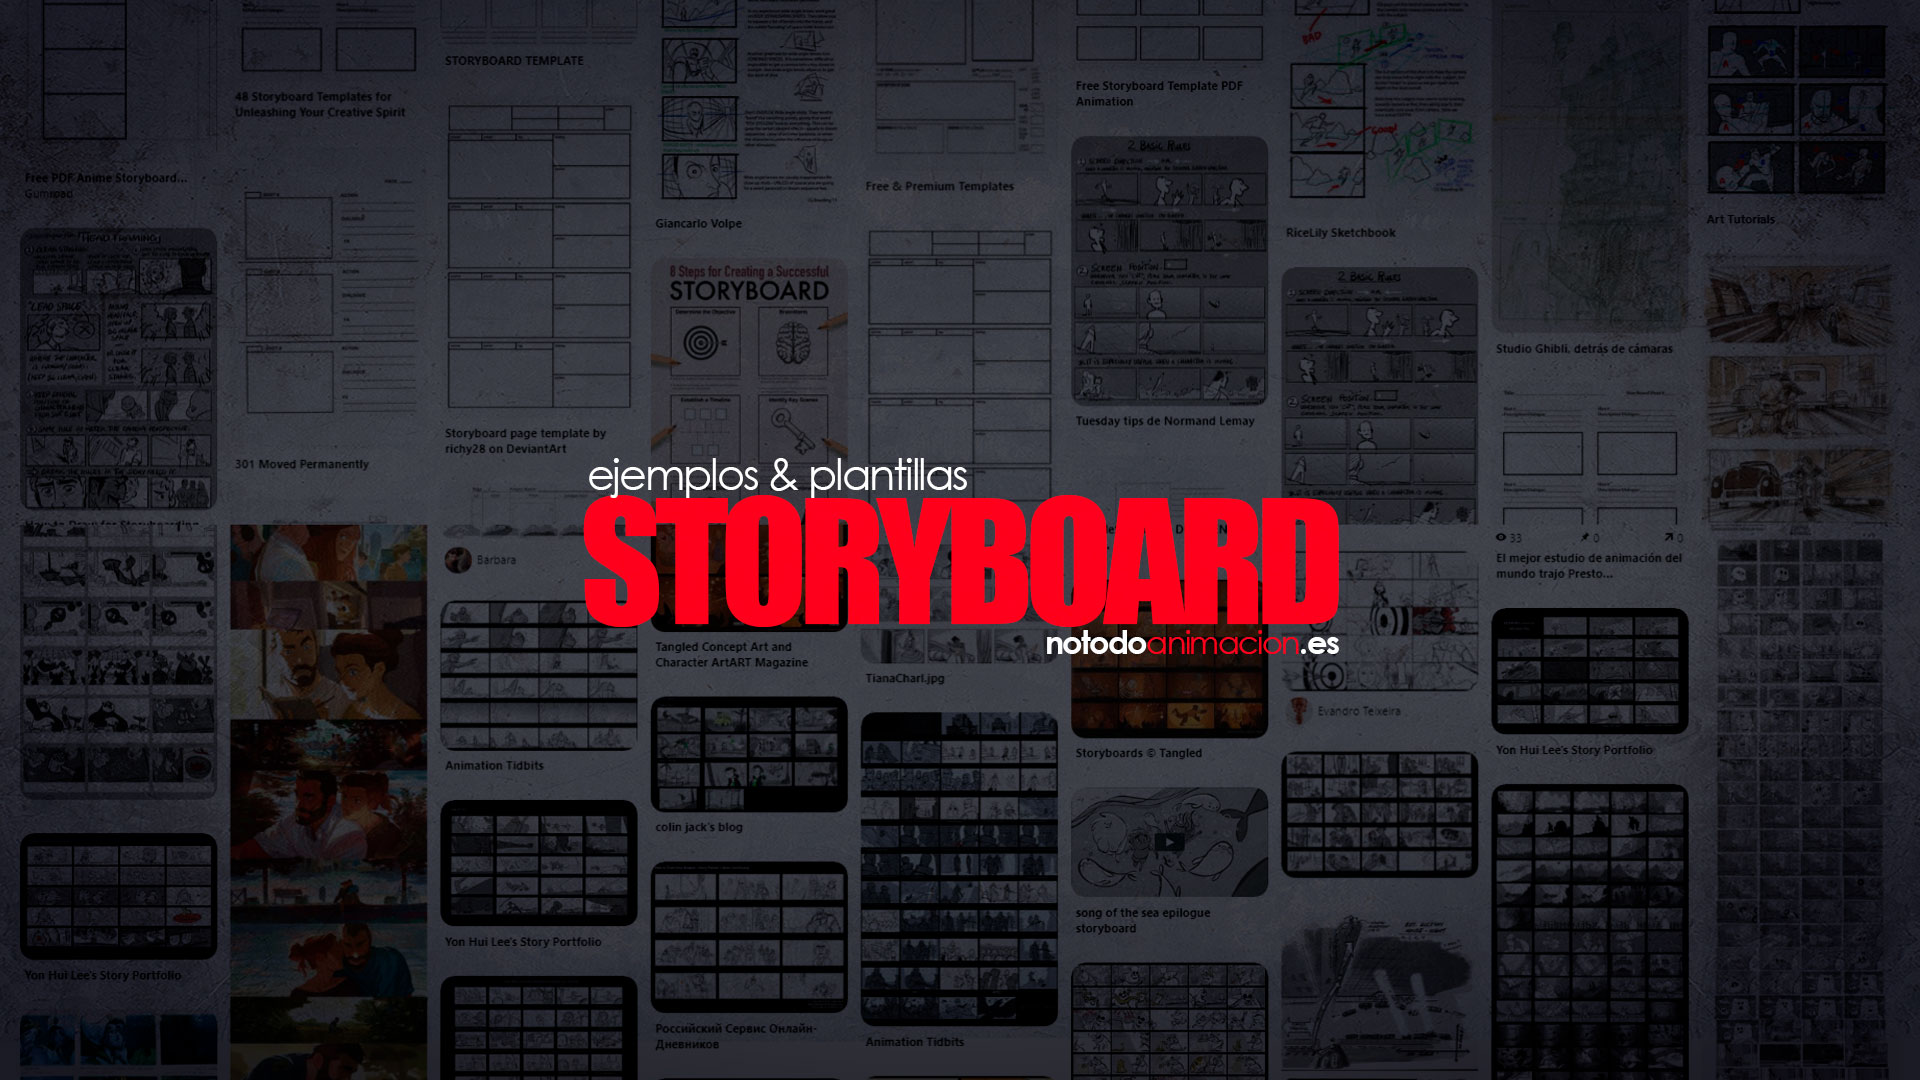 storyboard ejemplos y plantillas